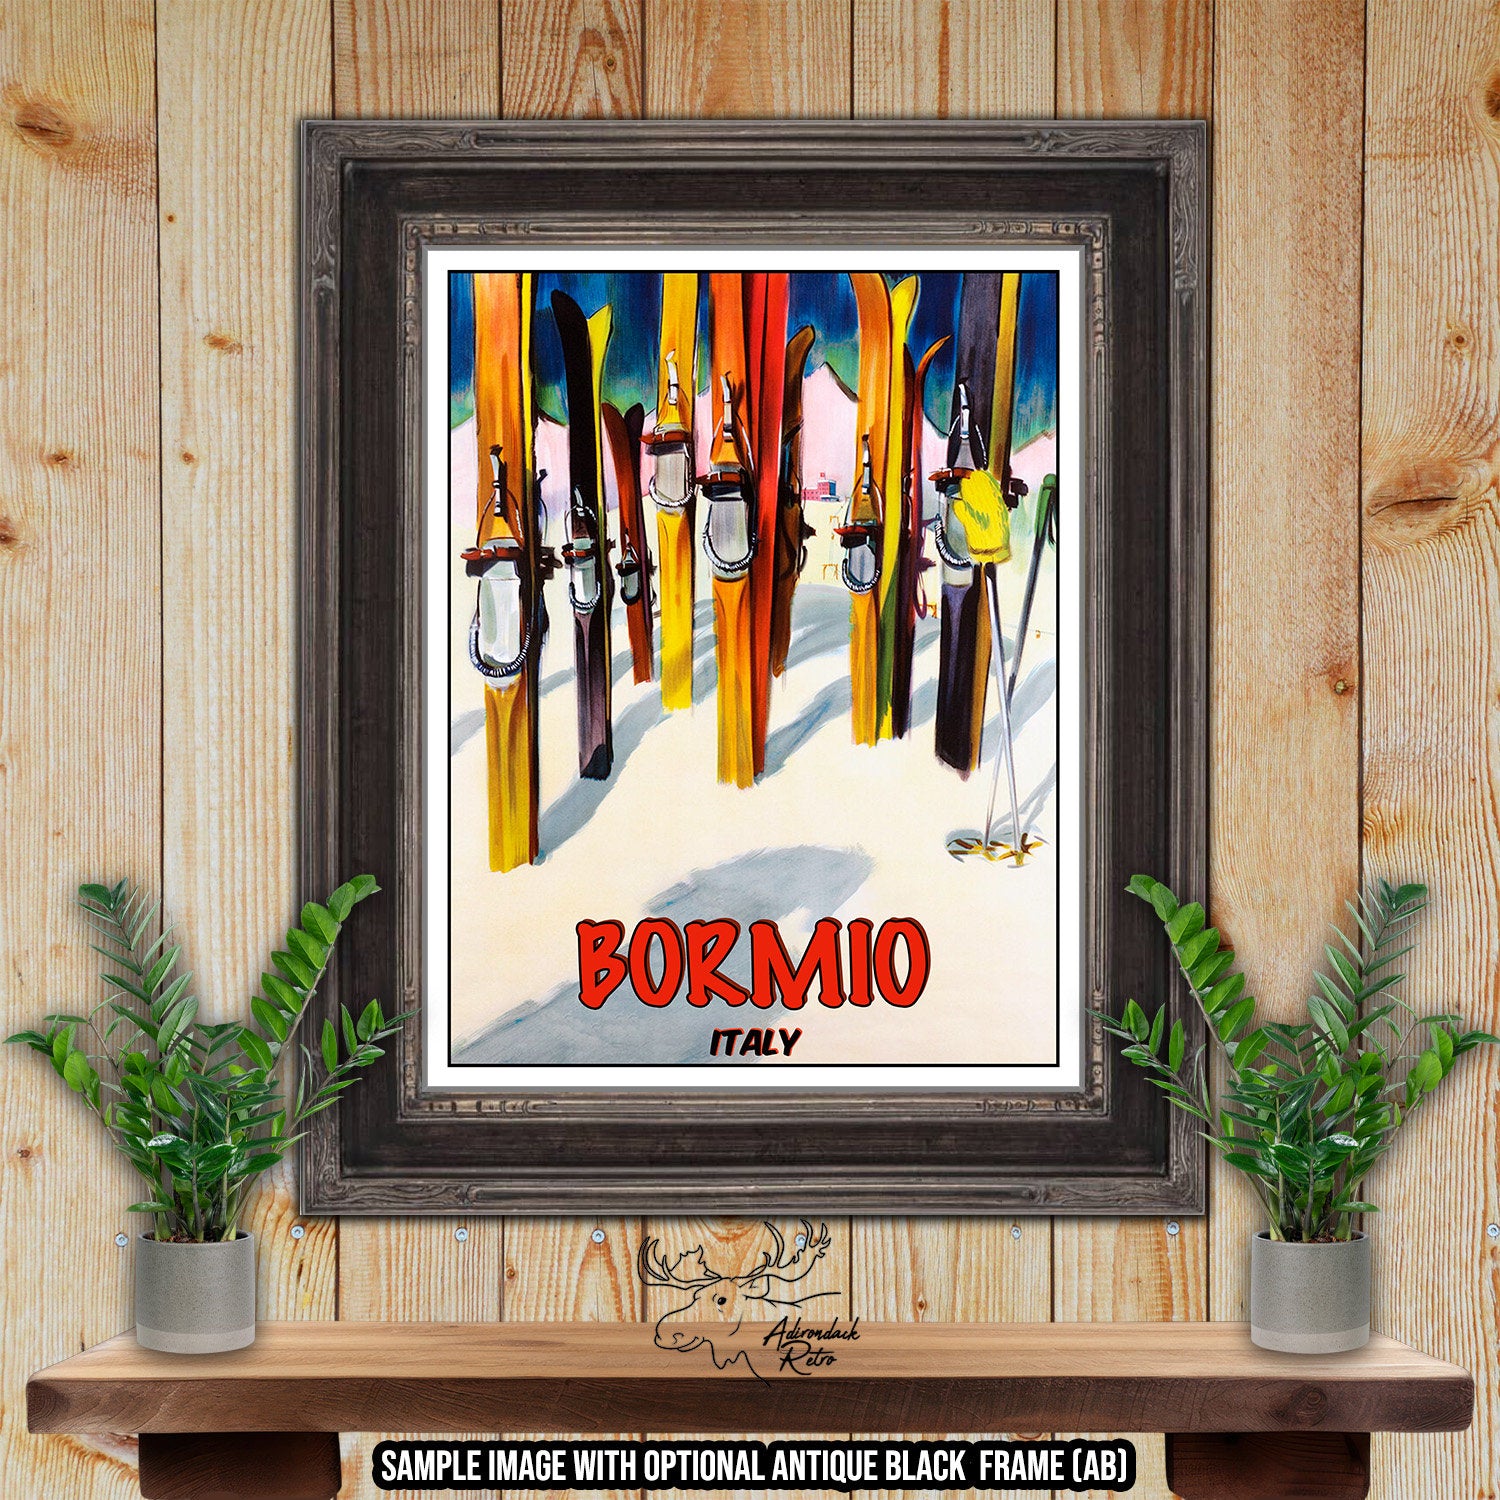 Bormio Ski Resort Print - Retro Italy Ski Resort Poster at Adirondack Retro